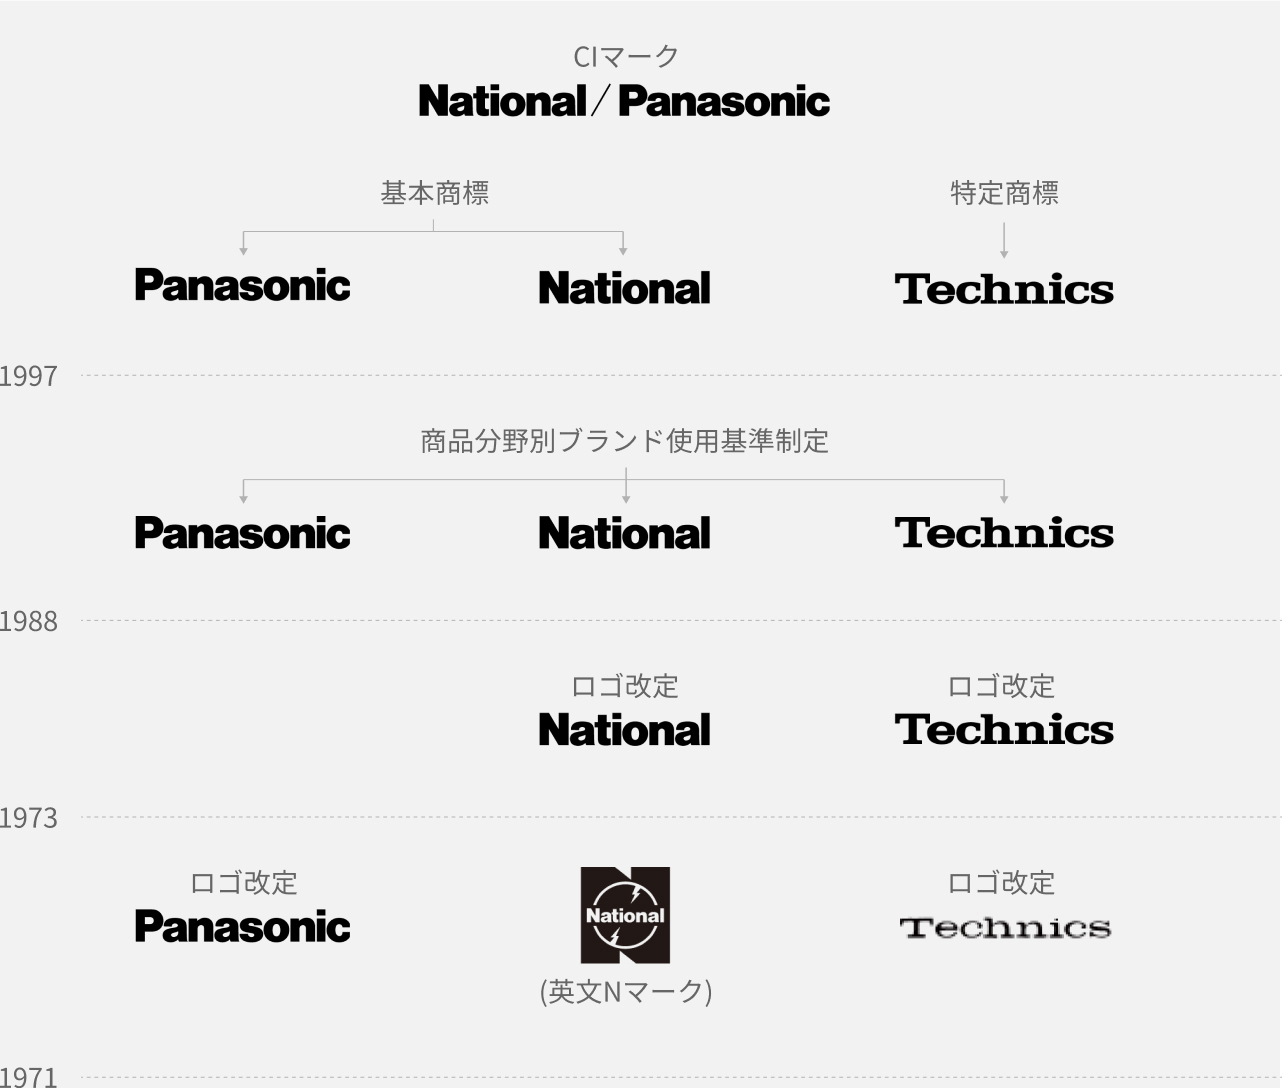 1997 年：CI マーク「National/Panasonic」、基本商標「Panasonic」と「National」、特定商標「Technics」。1988 年：「Panasonic」と「National」と「Technics」に商品分野別ブランド使用基準を制定。1973年：「National」と「Technics」をロゴ改定。1971 年：「Panasonic」をロゴ改定、「National」（英文N マーク）、「Technics」をロゴ改定。